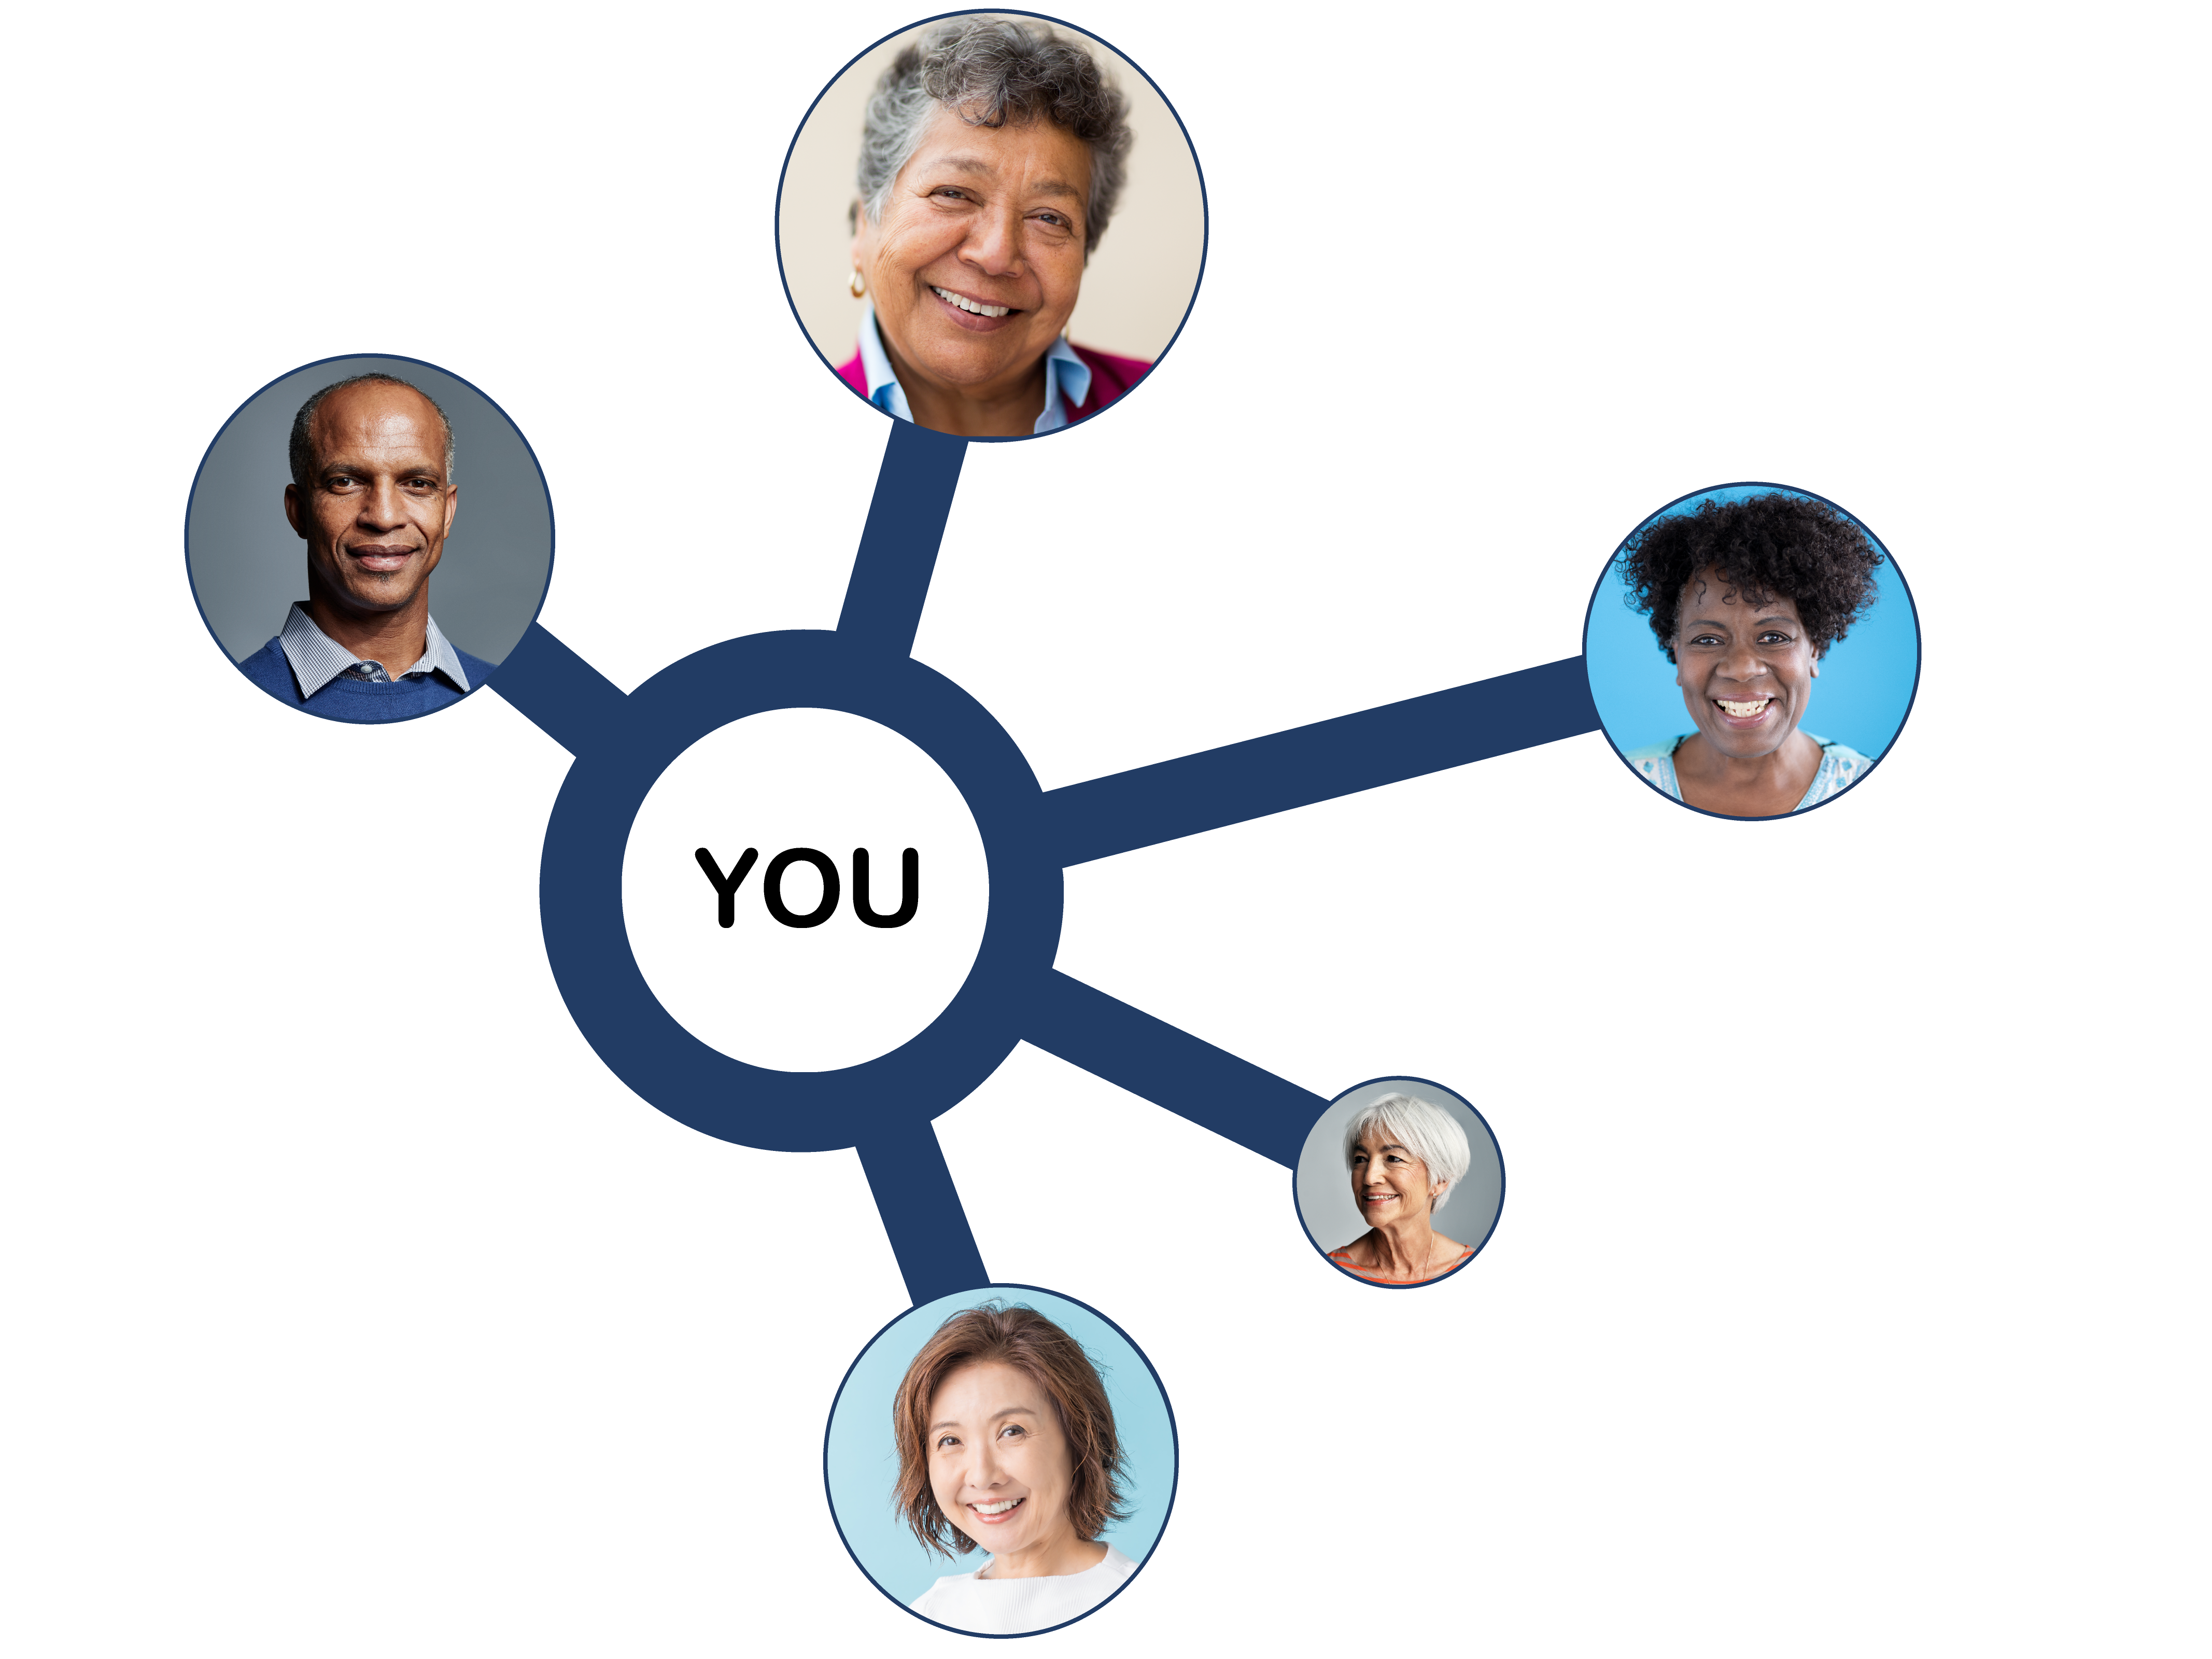 Un diagrama con "Tú" escrito en el centro, conectado por líneas a fotografías de cinco personas sonrientes y diversas de distintas edades, géneros y etnias.